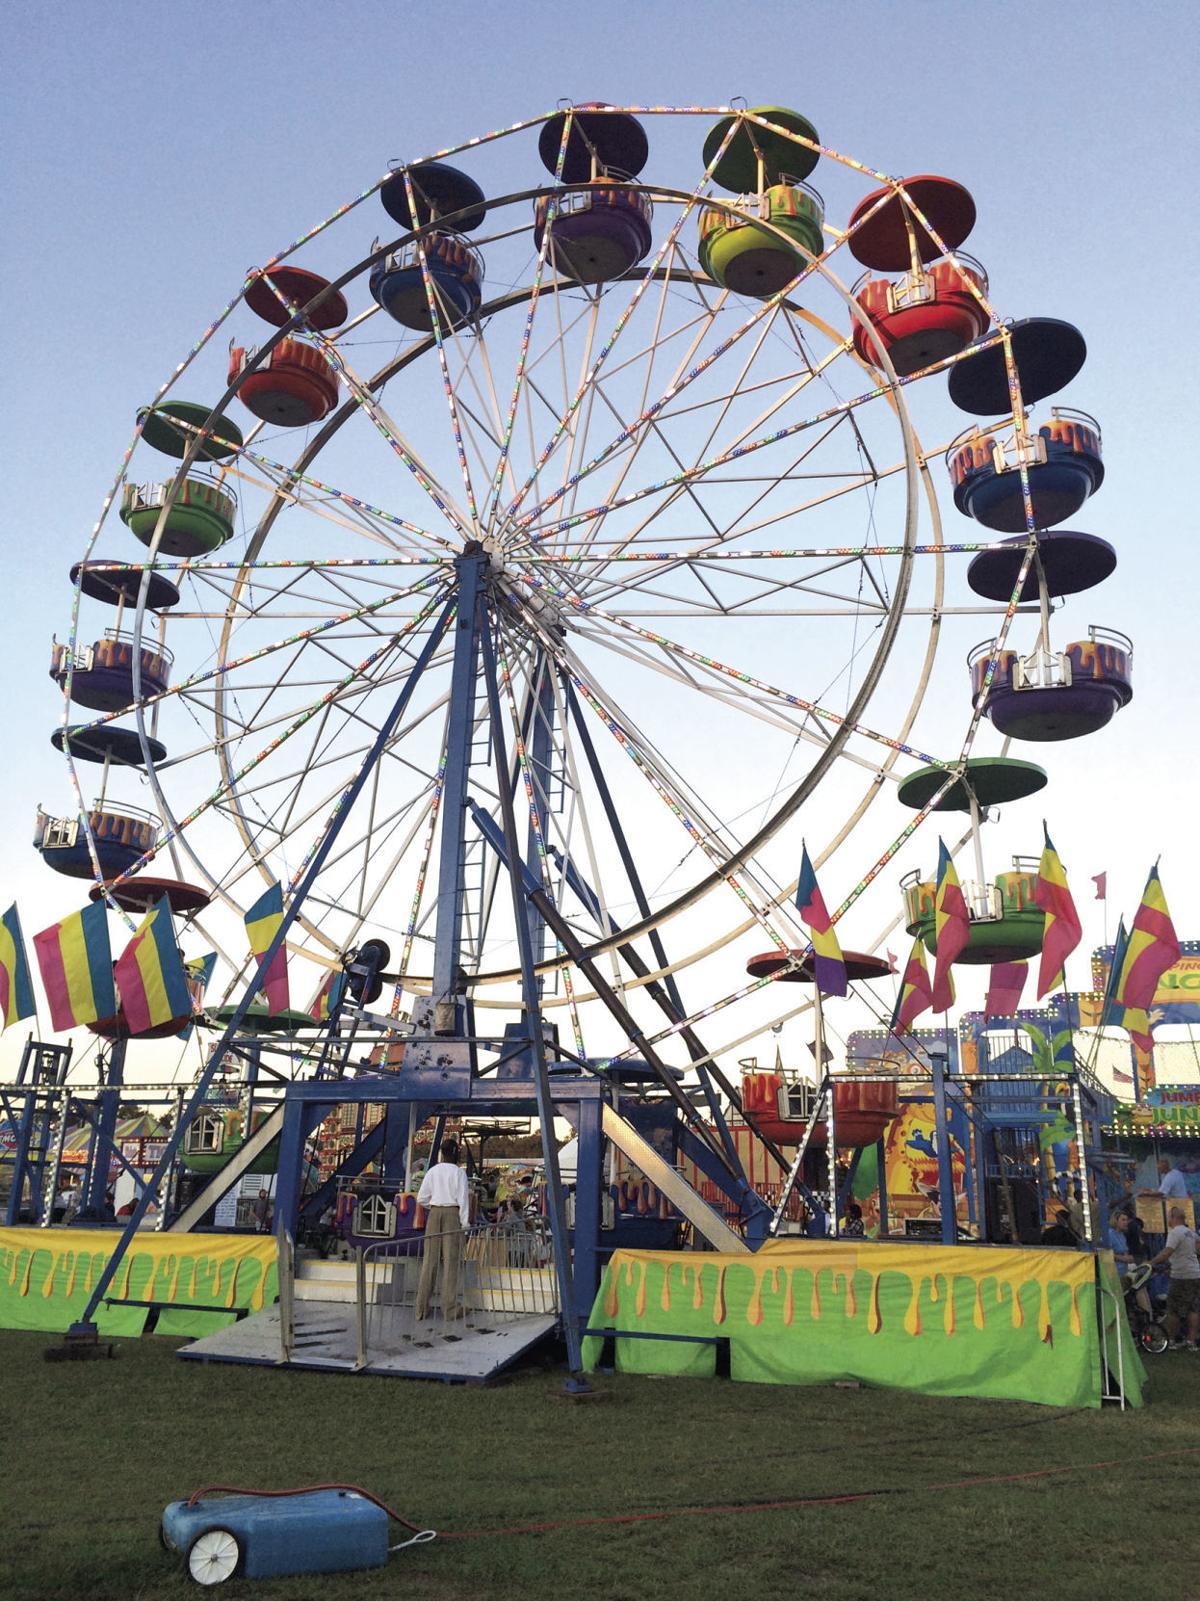 107th Annual Orangeburg County Fair kicks off Tuesday Leisure